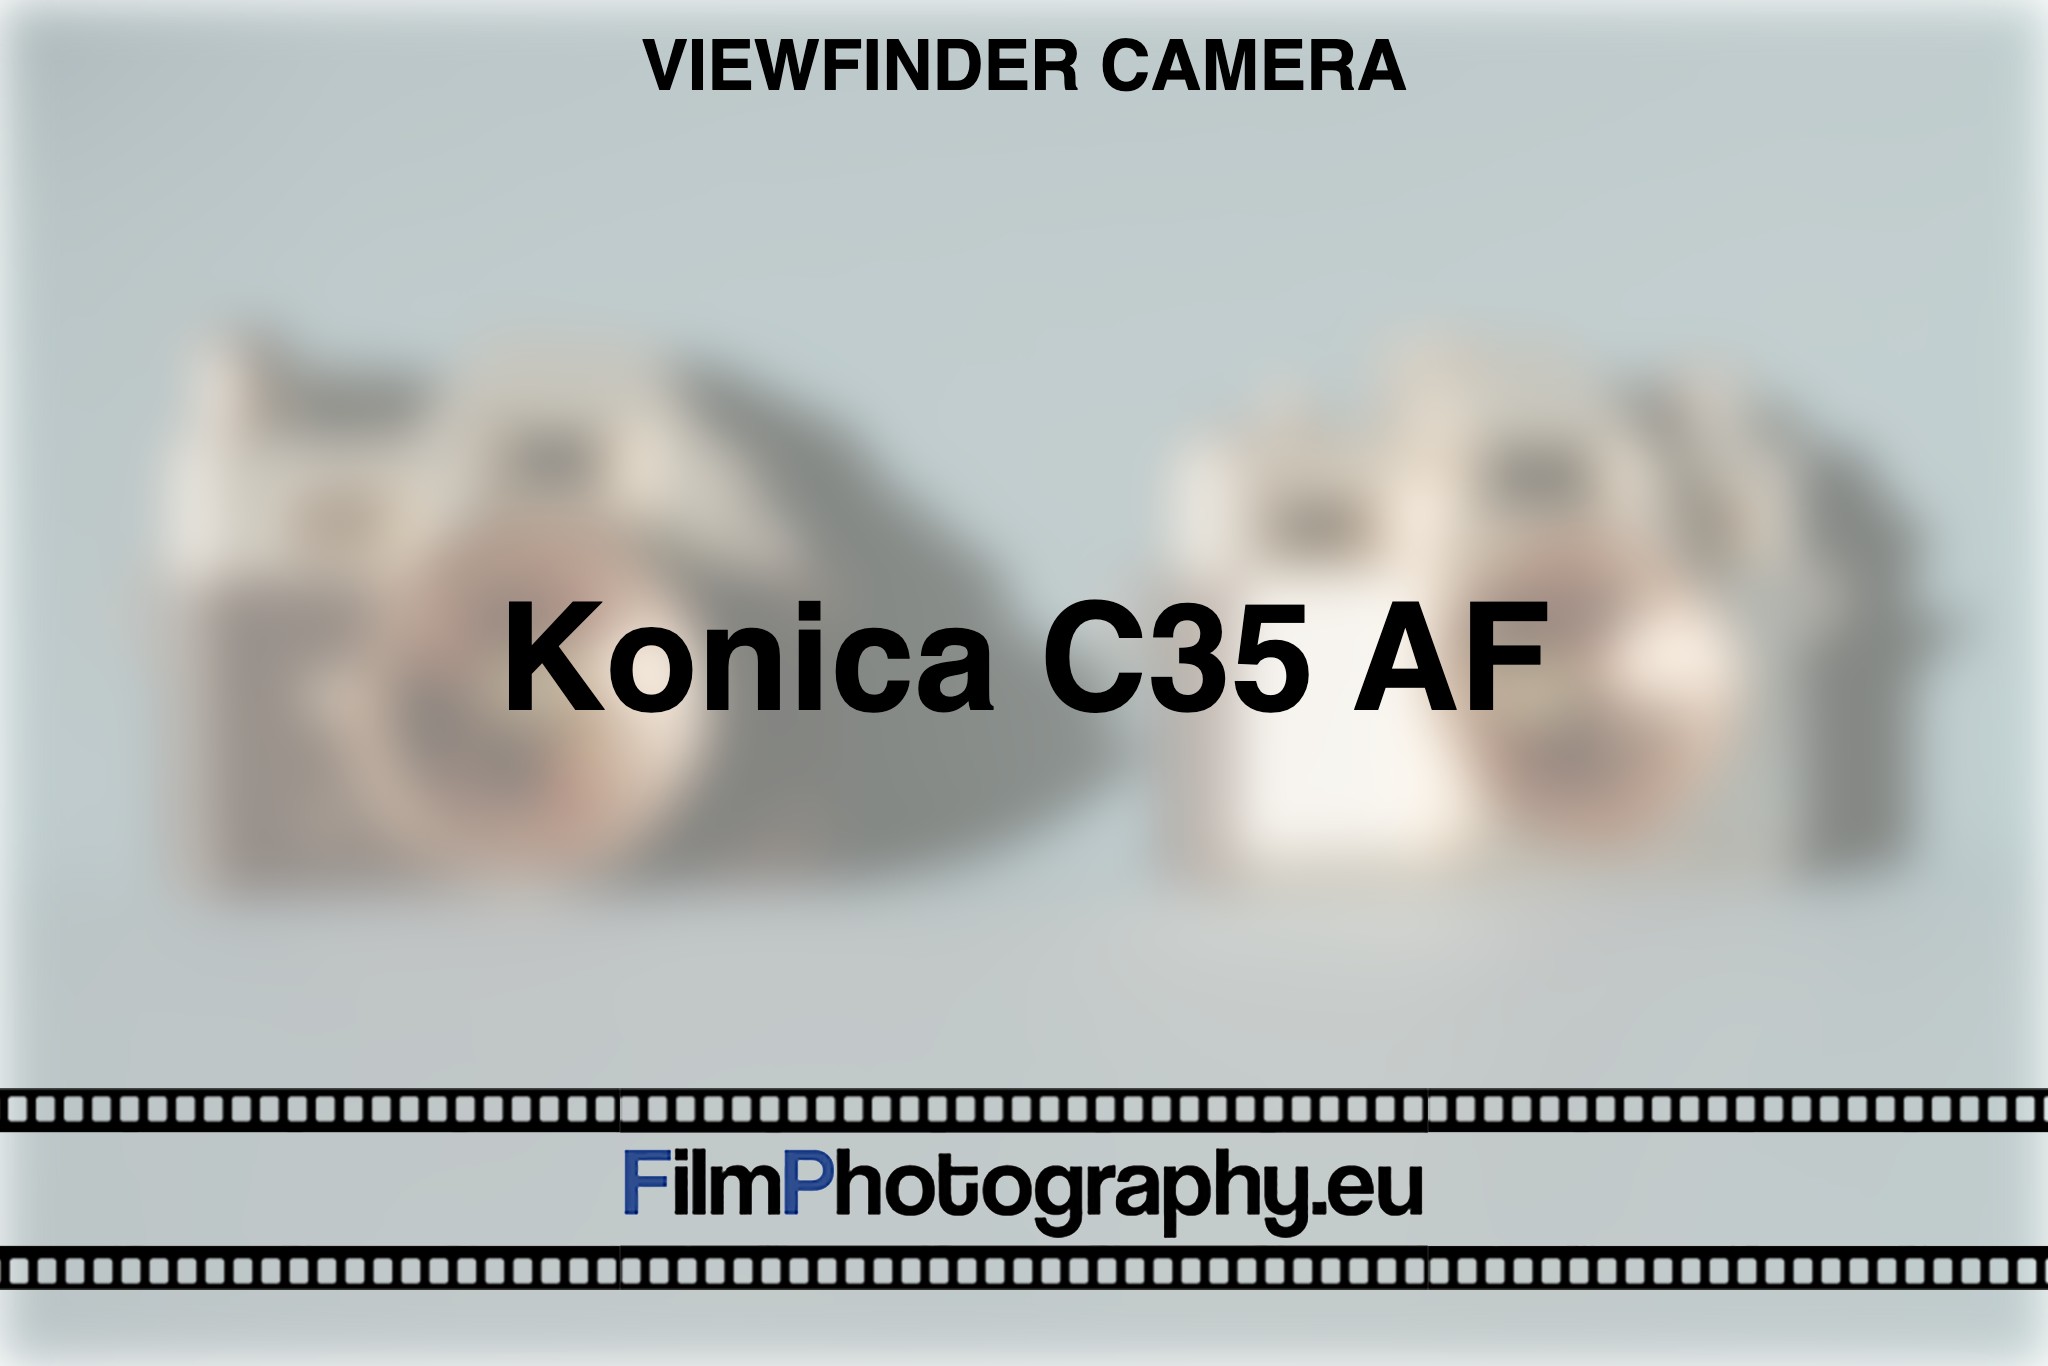 konica-c35-af-viewfinder-camera-bnv